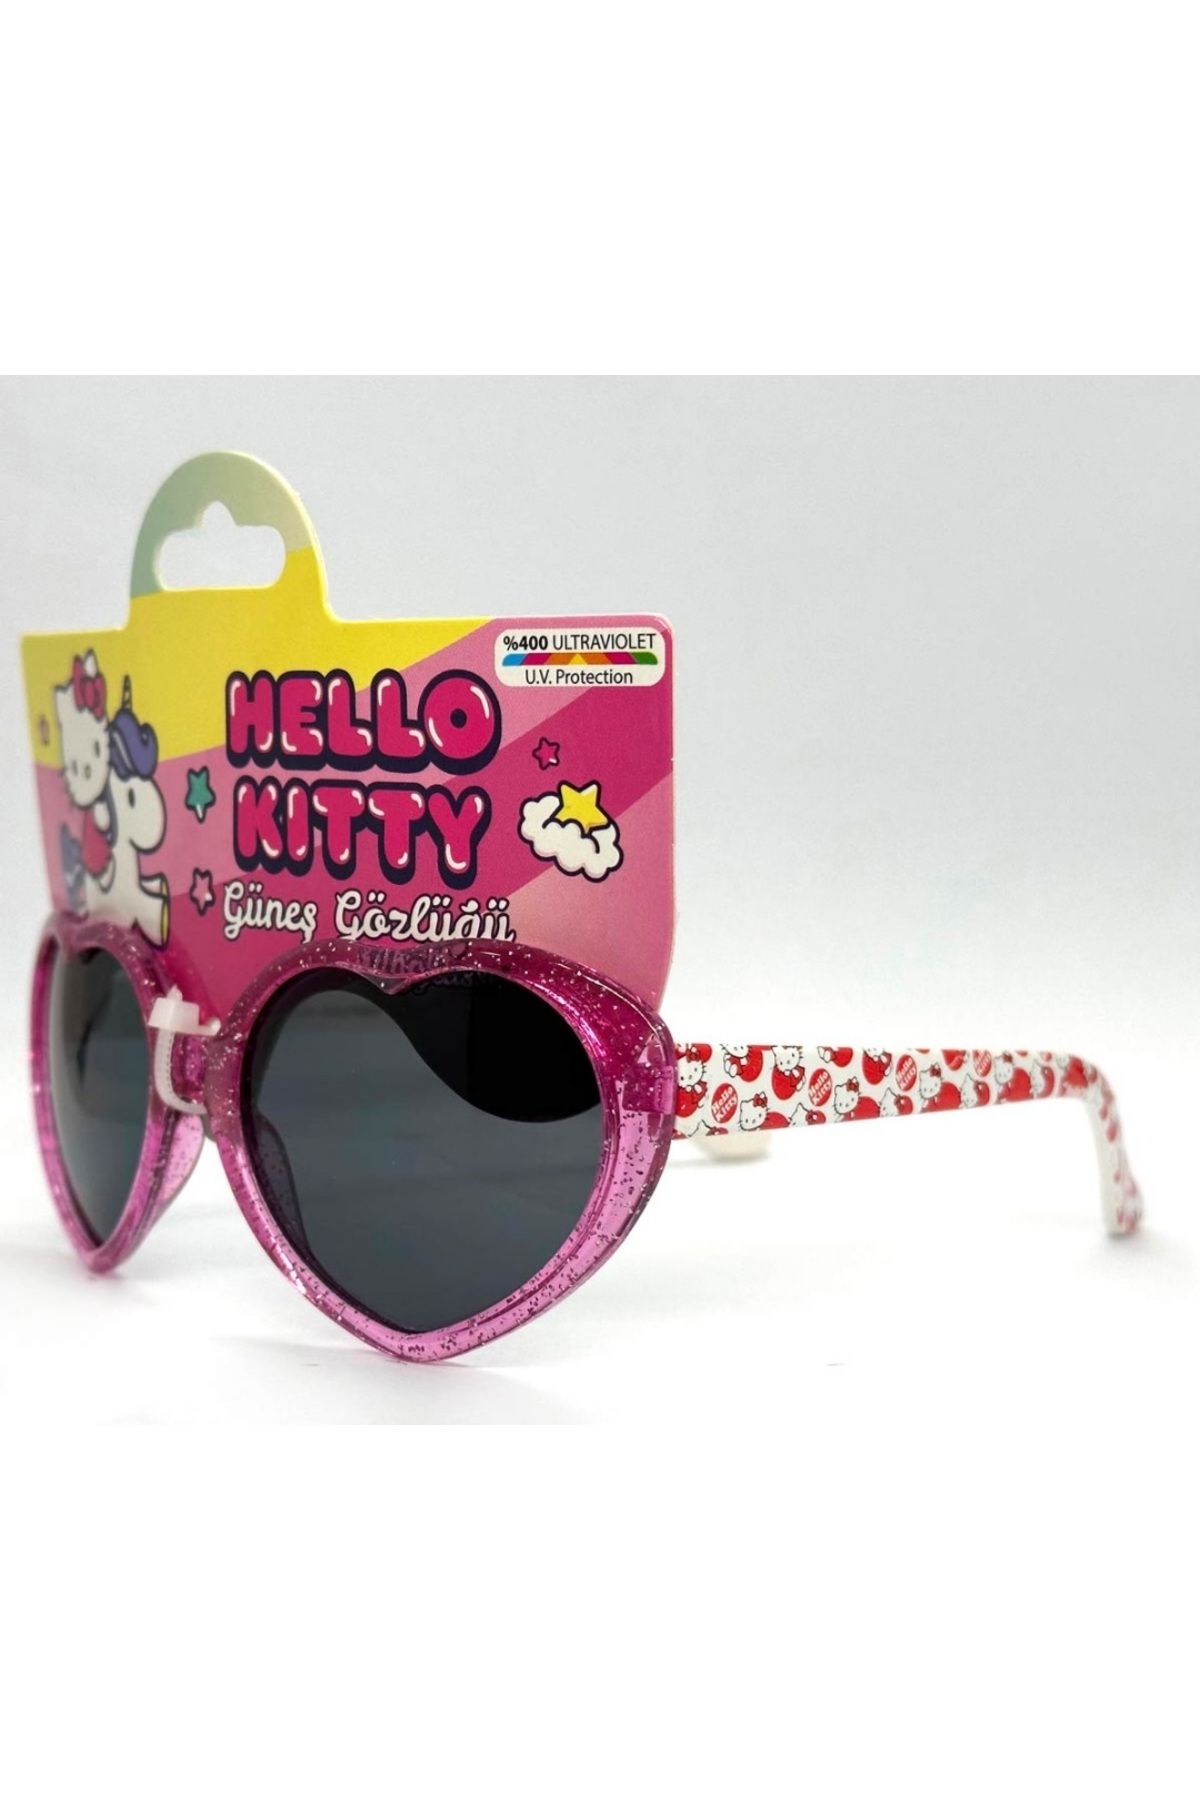 Hello Kitty x Crap Eyewear Latest Sunglasses Collection